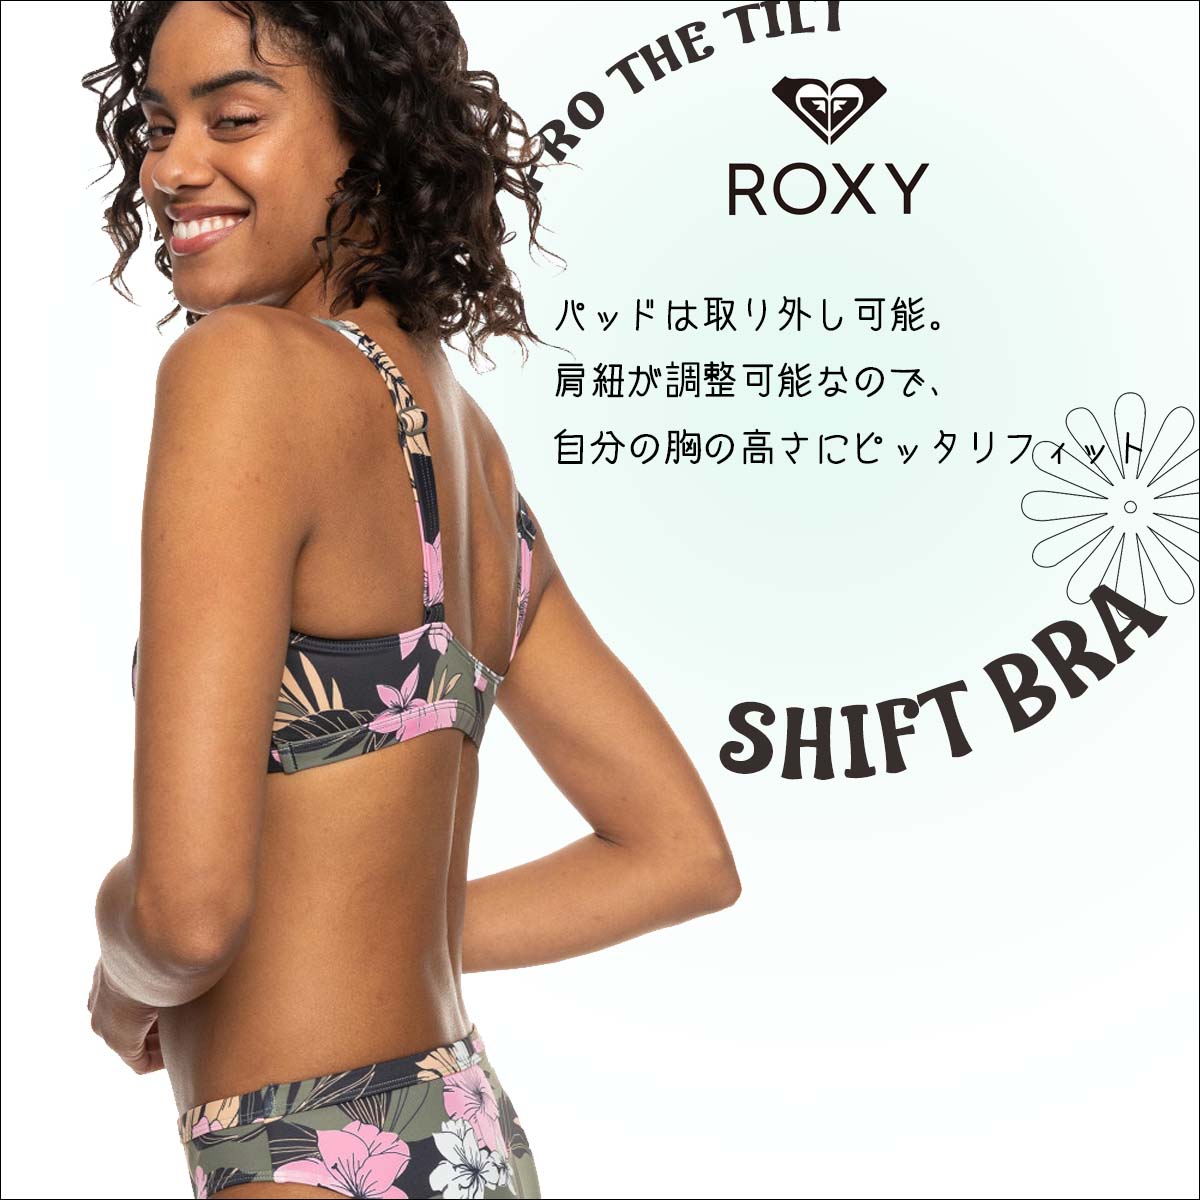 24 ROXY Roxy бикини PRO THE TILT SHIFT BRA купальный костюм плавание одежда верх только bla женский ERJX305251 Япония стандартный товар 